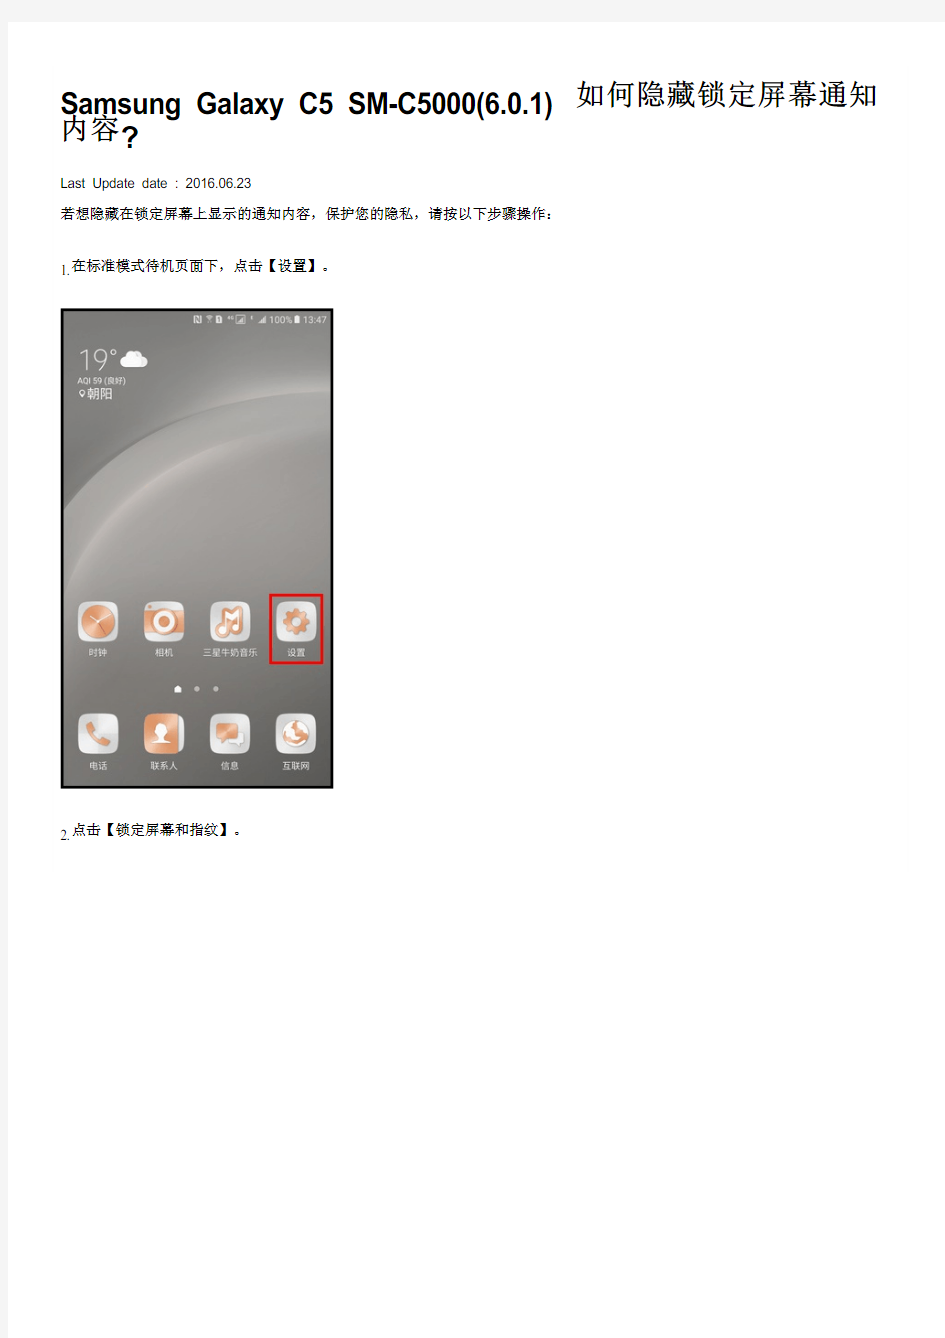 Samsung Galaxy C5 SM-C5000(6.0.1)如何隐藏锁定屏幕通知内容